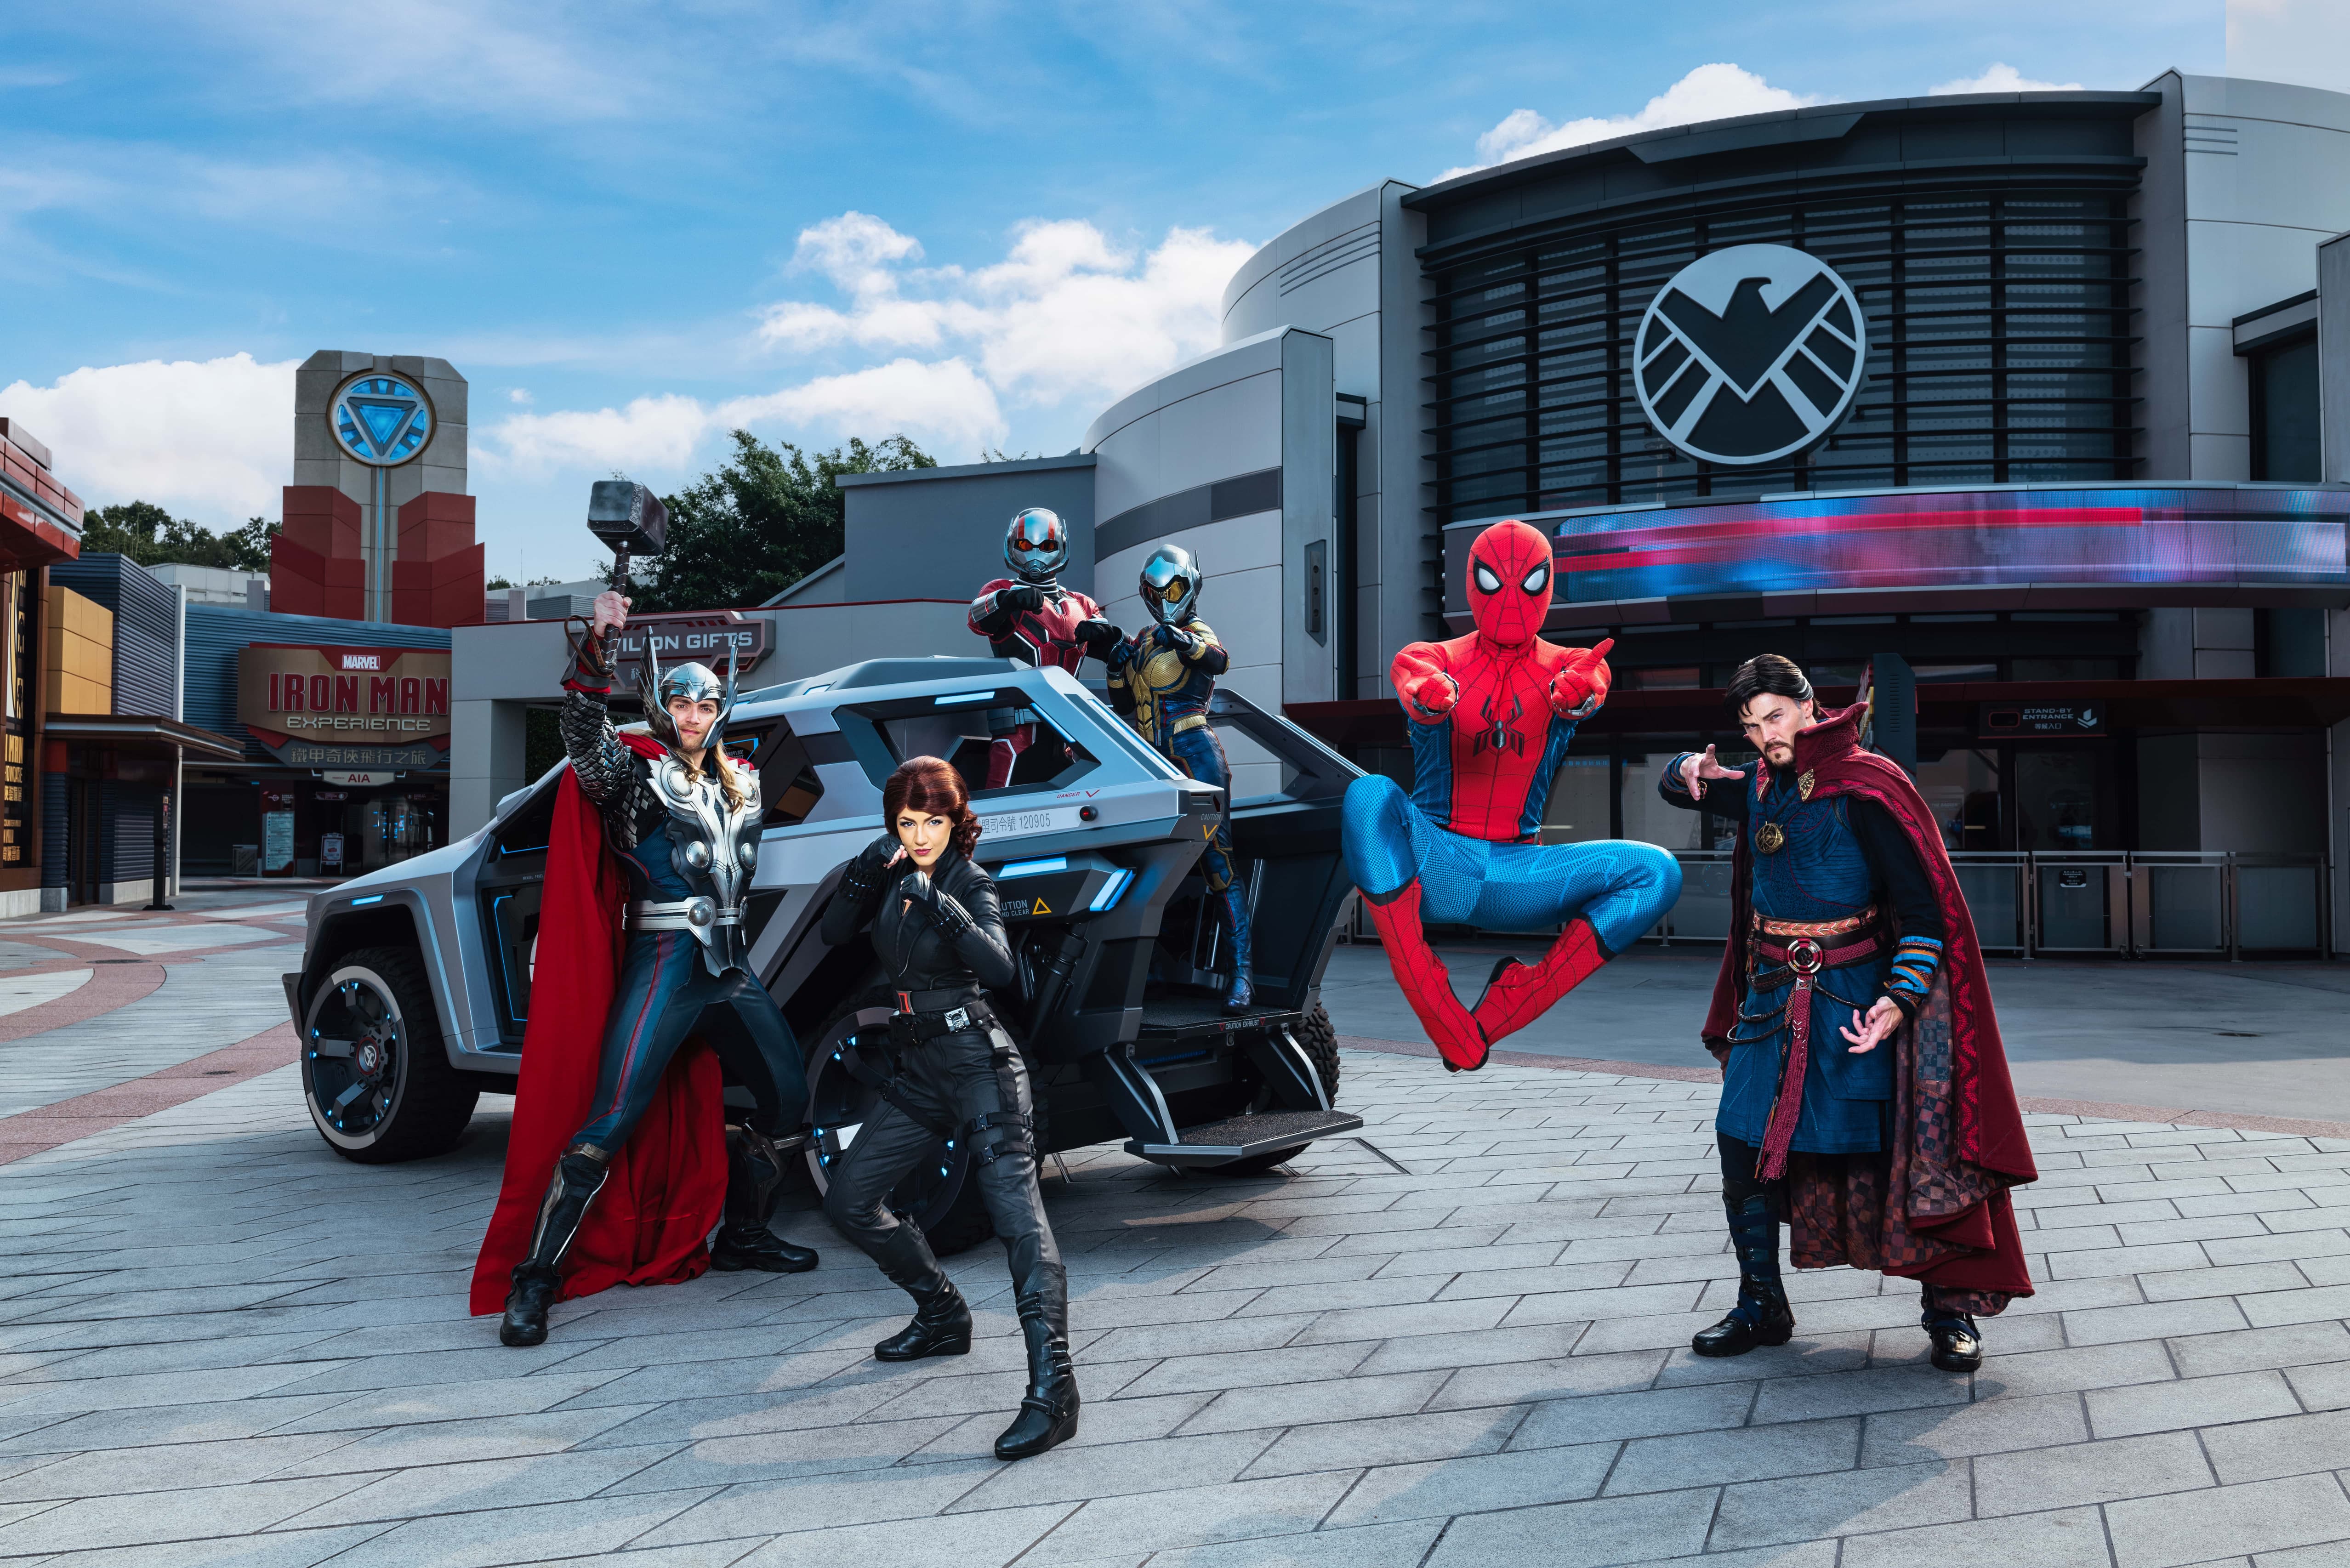 Marvel Super Heroes at Hong Kong Disneyland